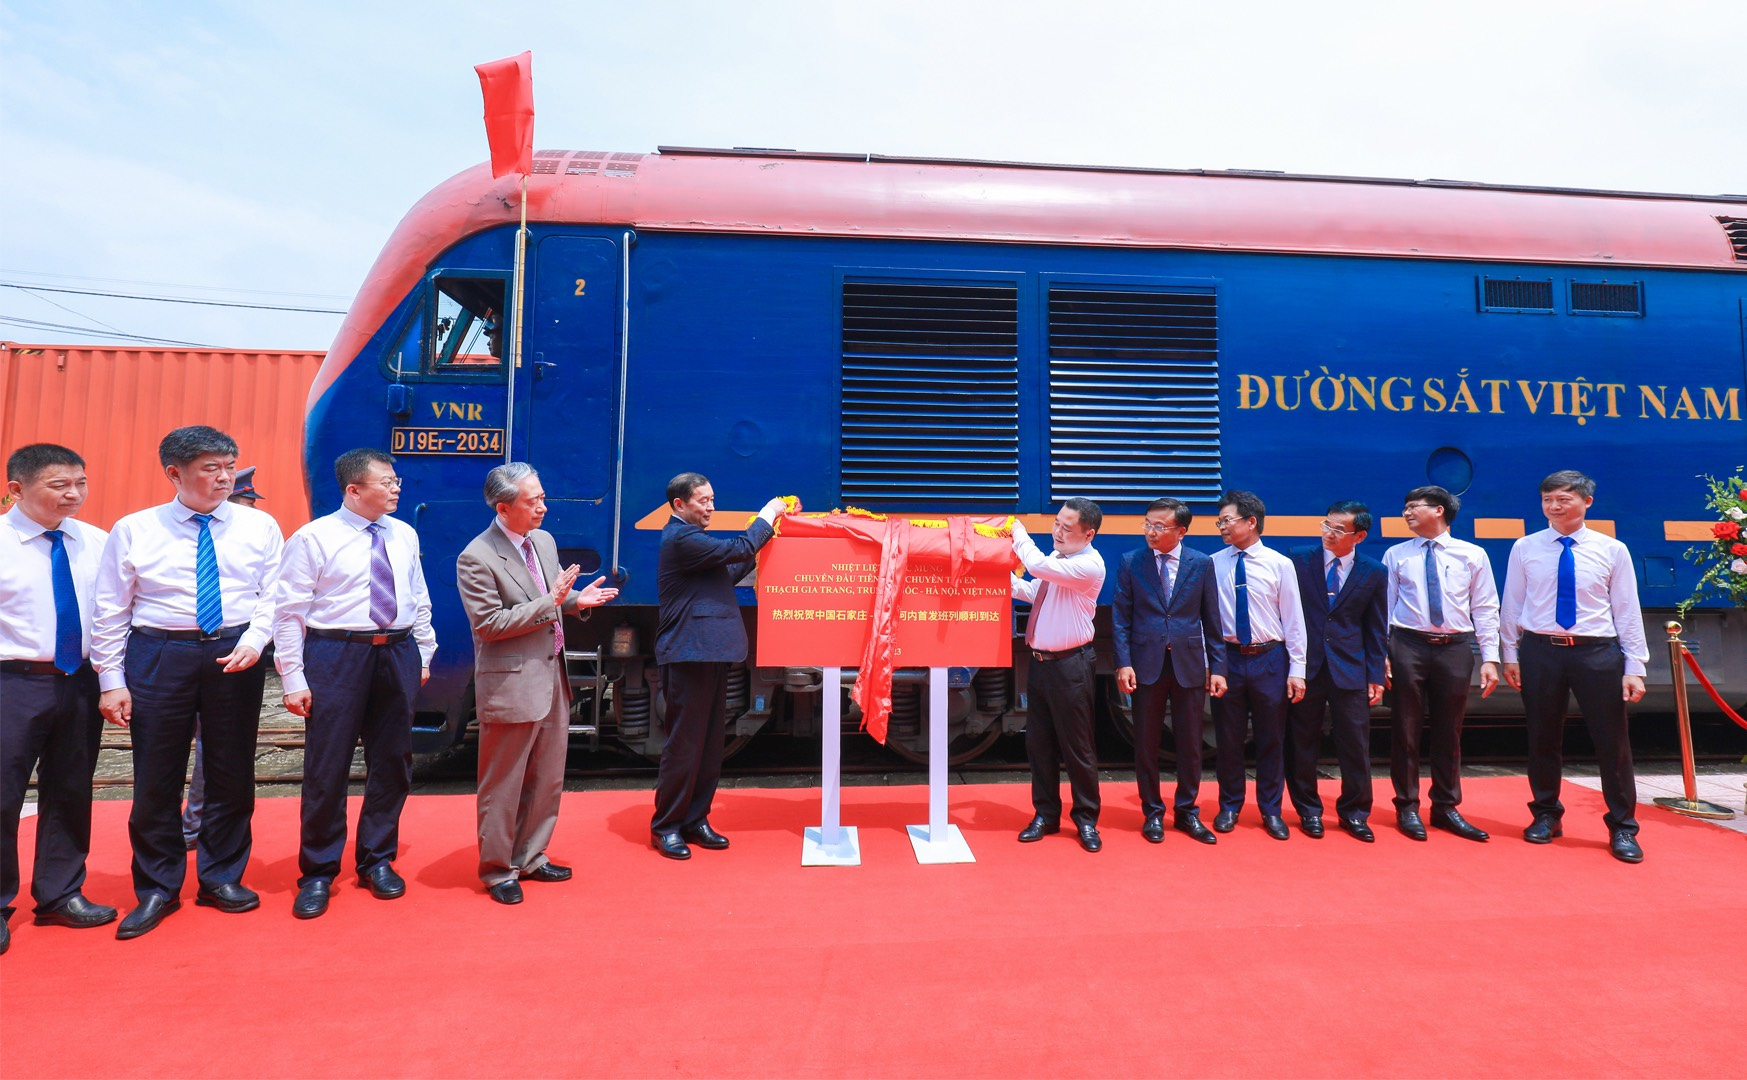 Các đại biểu chúc mừng chuyến tàu đầu tiên tuyến liên vận quốc tế Thạch Gia Trang - Yên Viên.